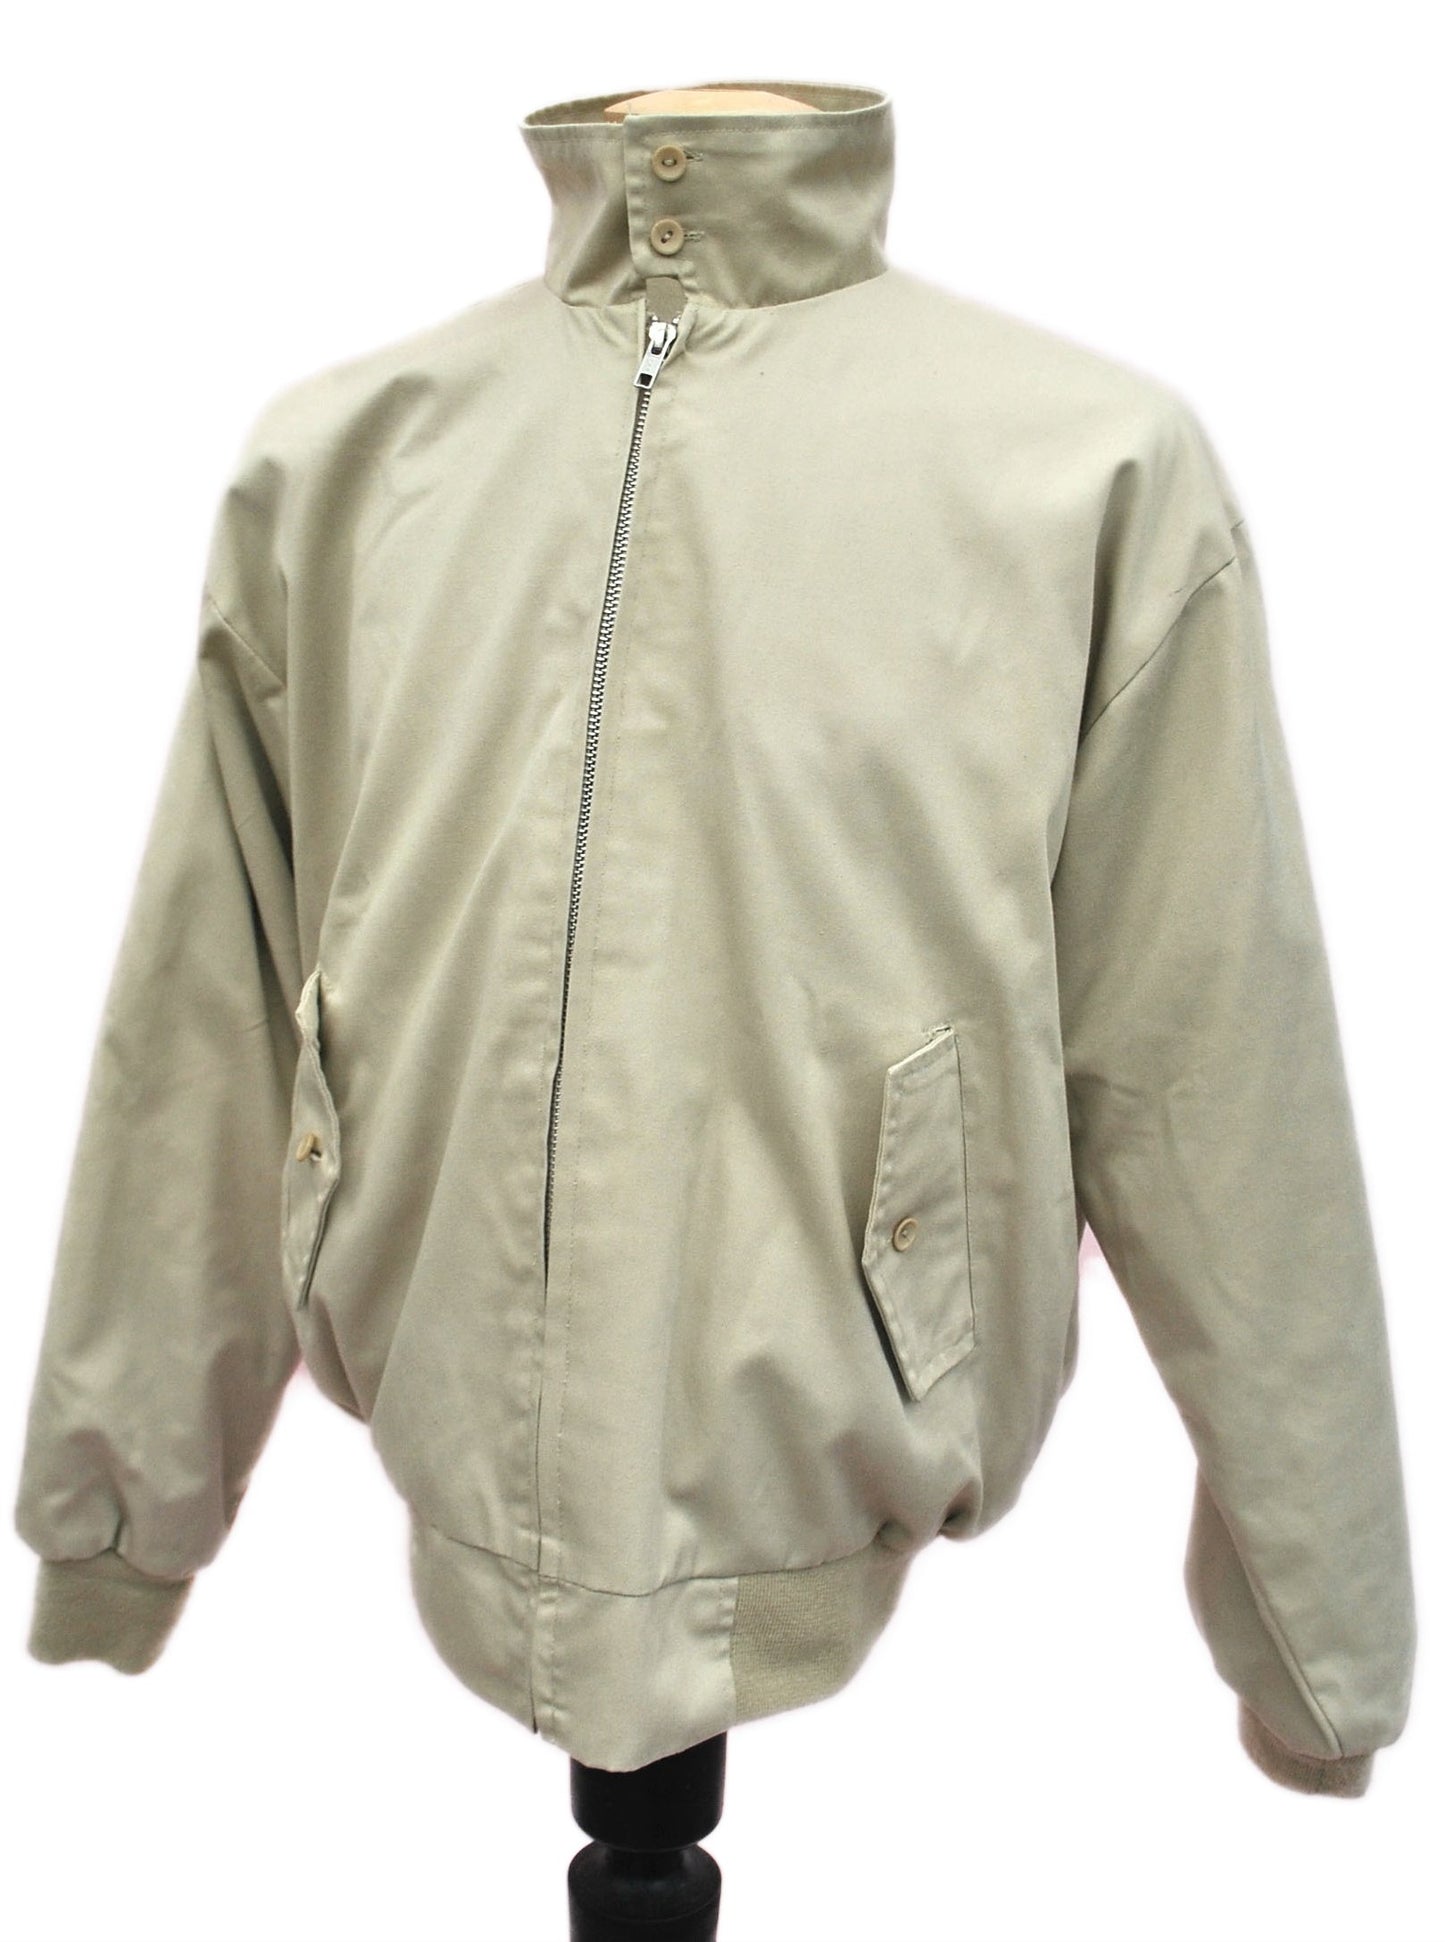 Vintage Mod Harrington Bomber Jacket • Tartan • Plaid Wool Lining